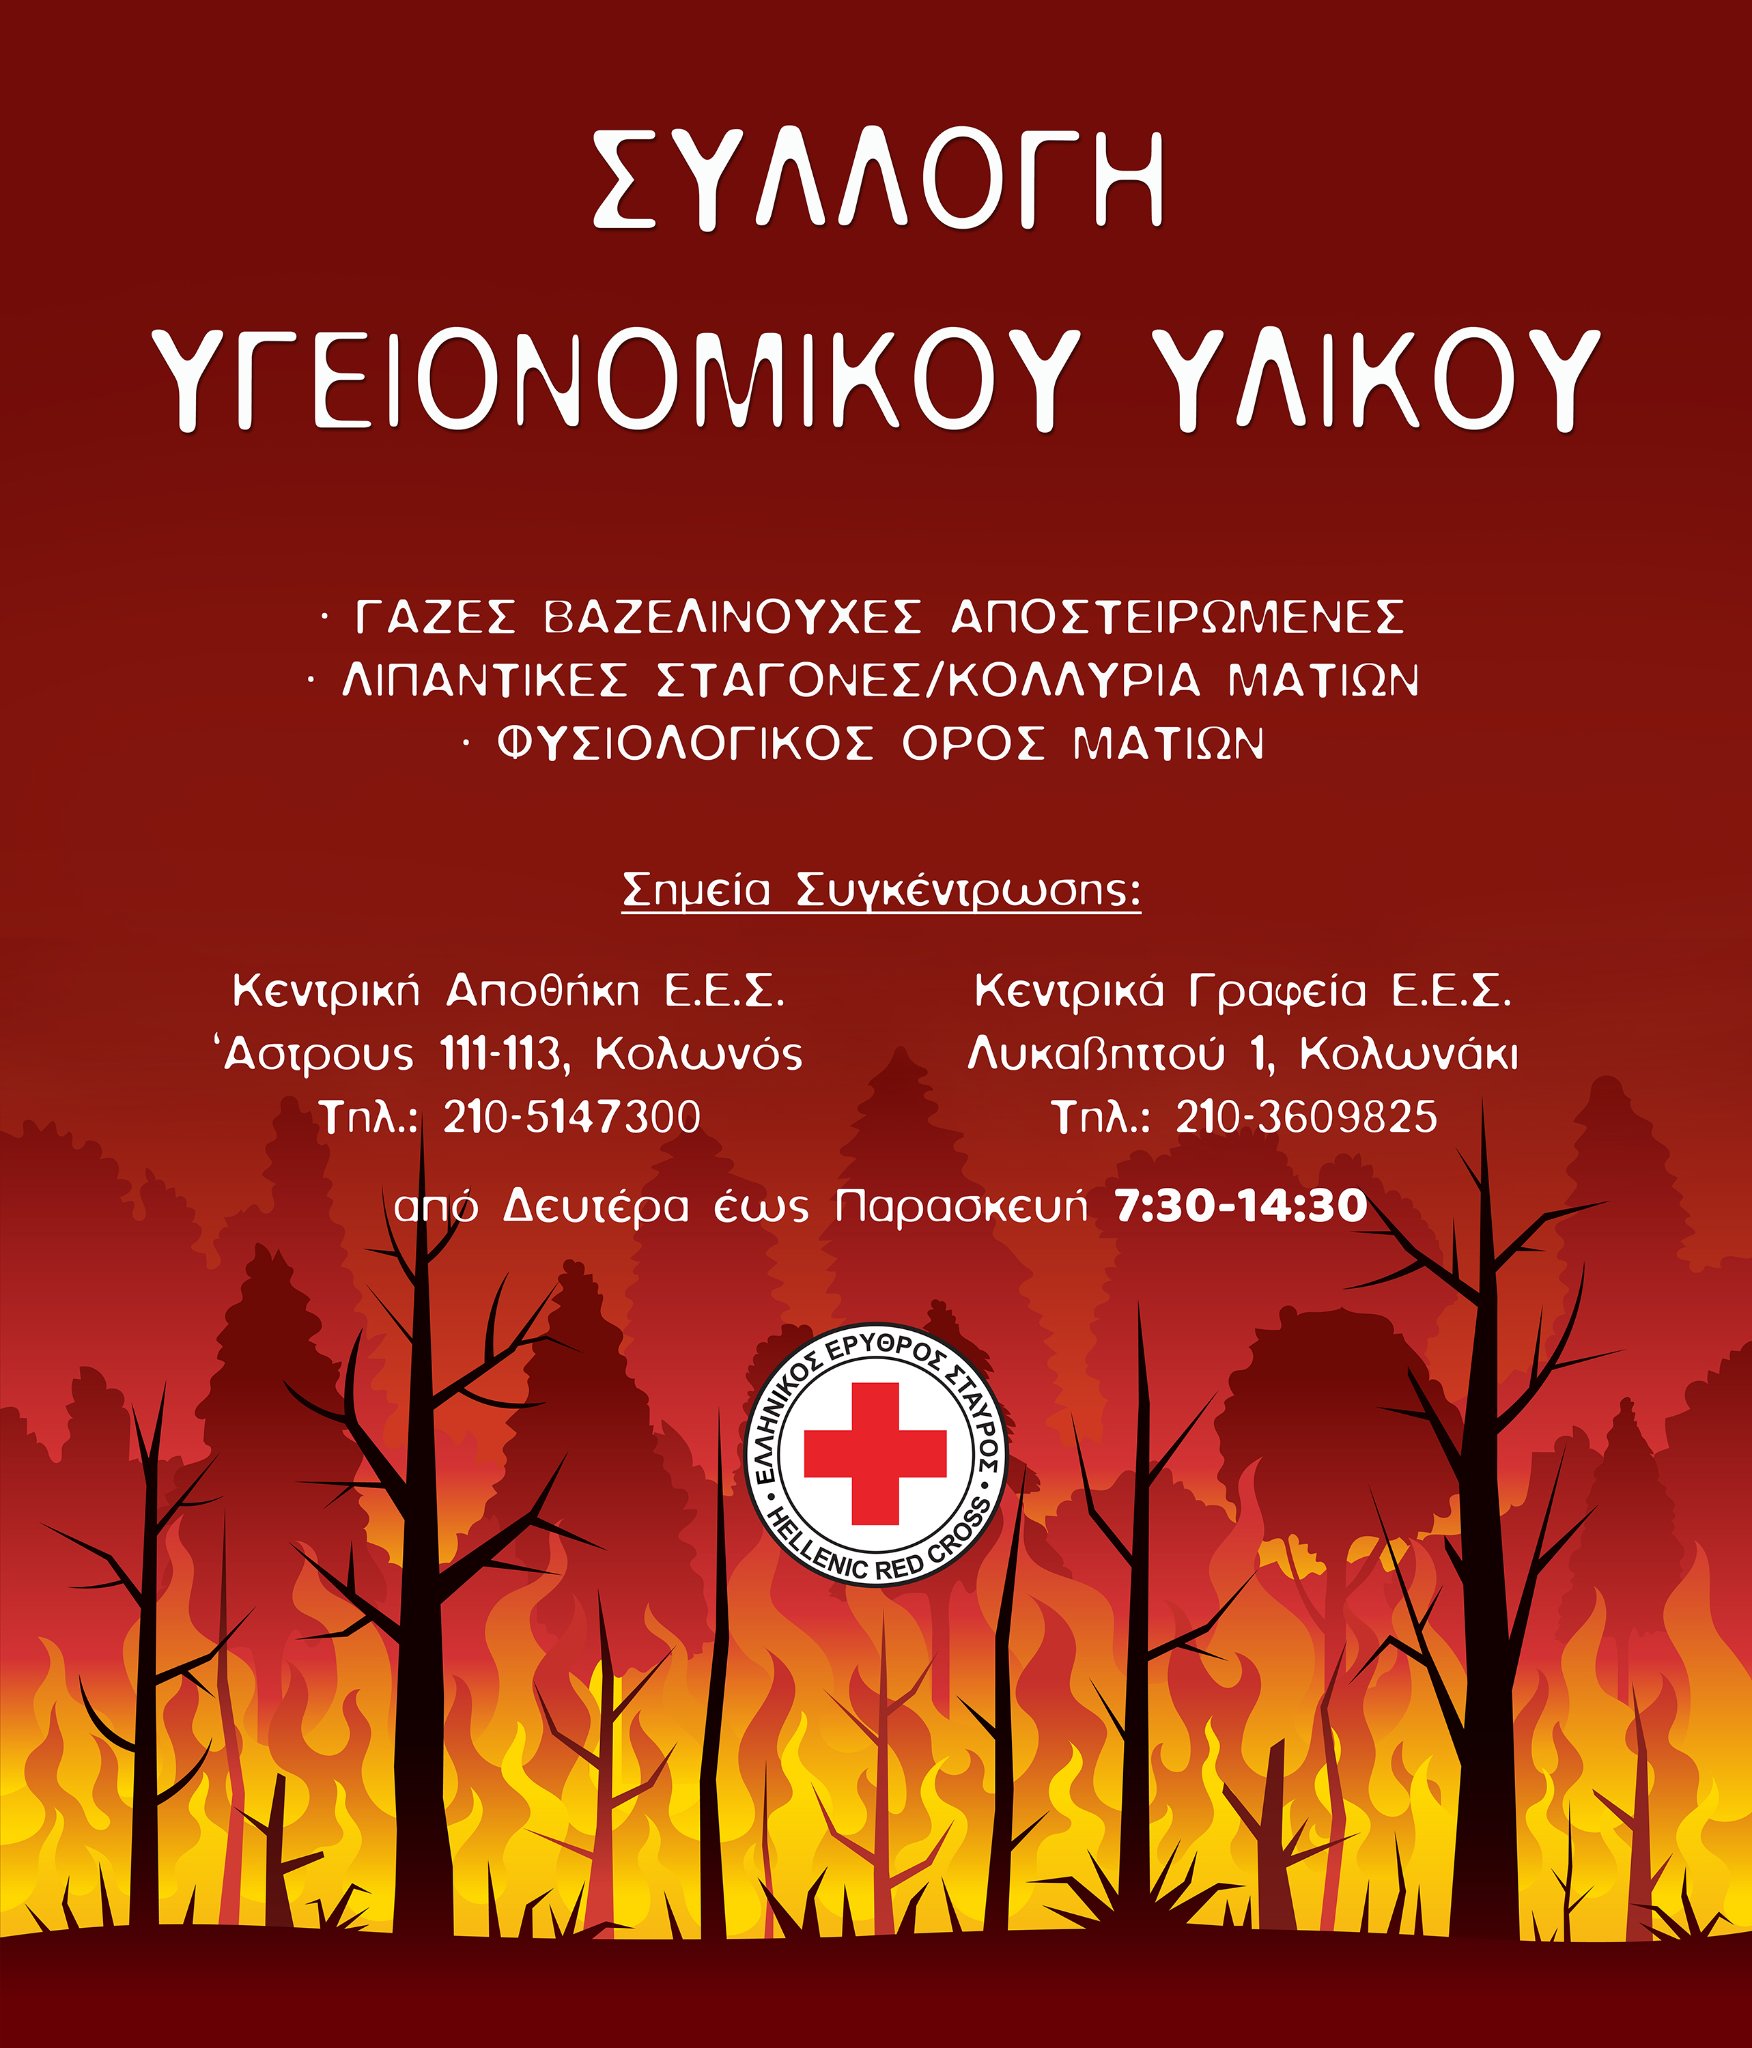 Ο Ελληνικός Ερυθρός Σταυρός απευθύνει κάλεσμα στον κόσμο